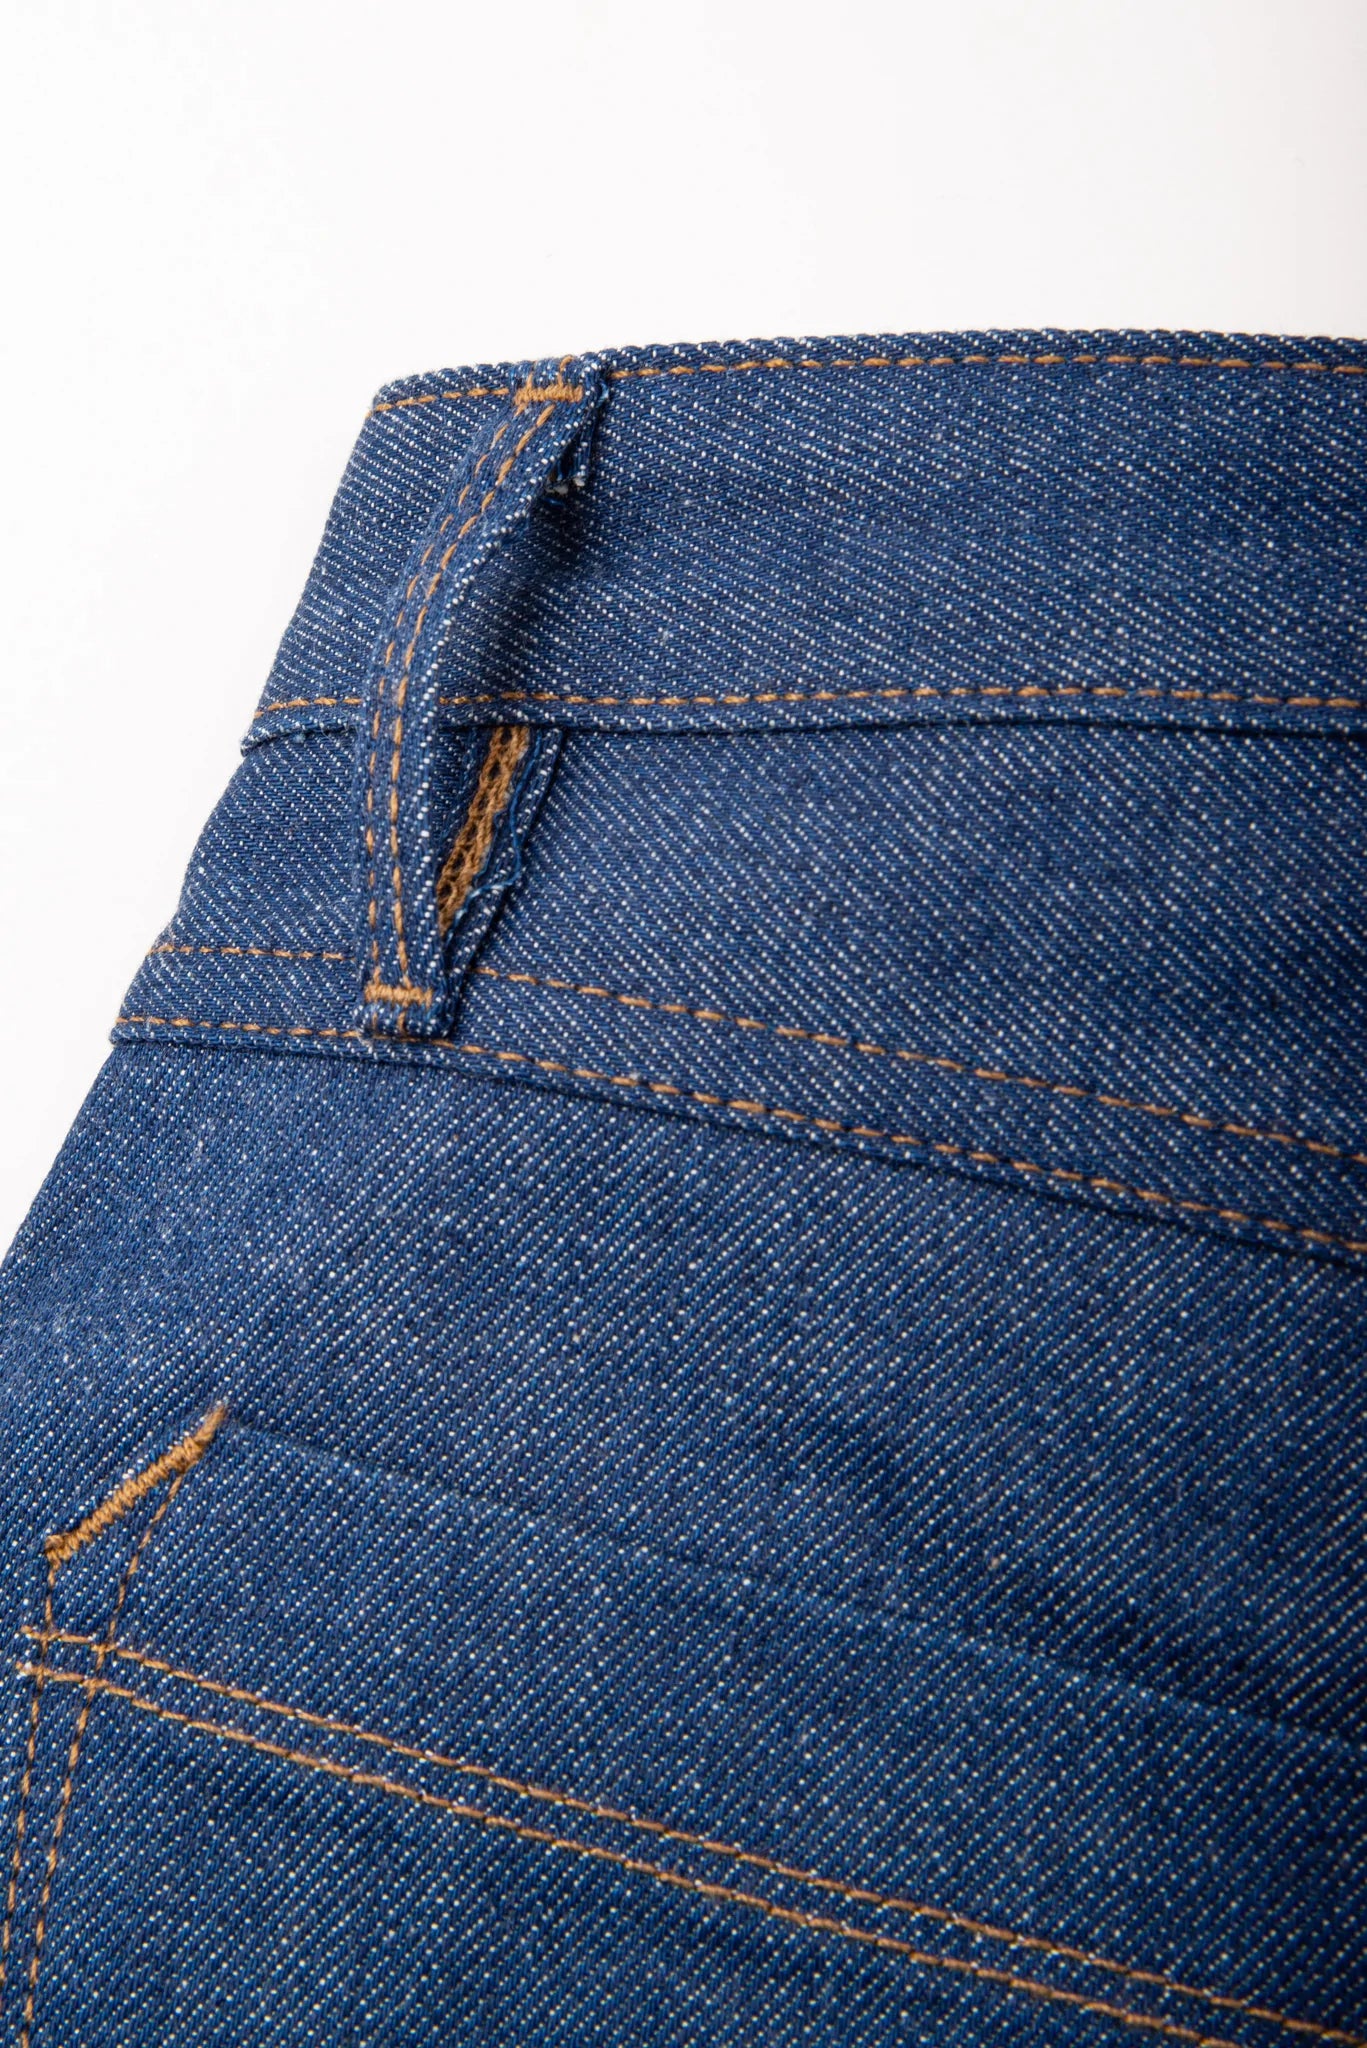 ReRock Jeans - 100% Baumwolle - Gr. 46 - Low Waist - Straight in Sachsen -  Hirschstein